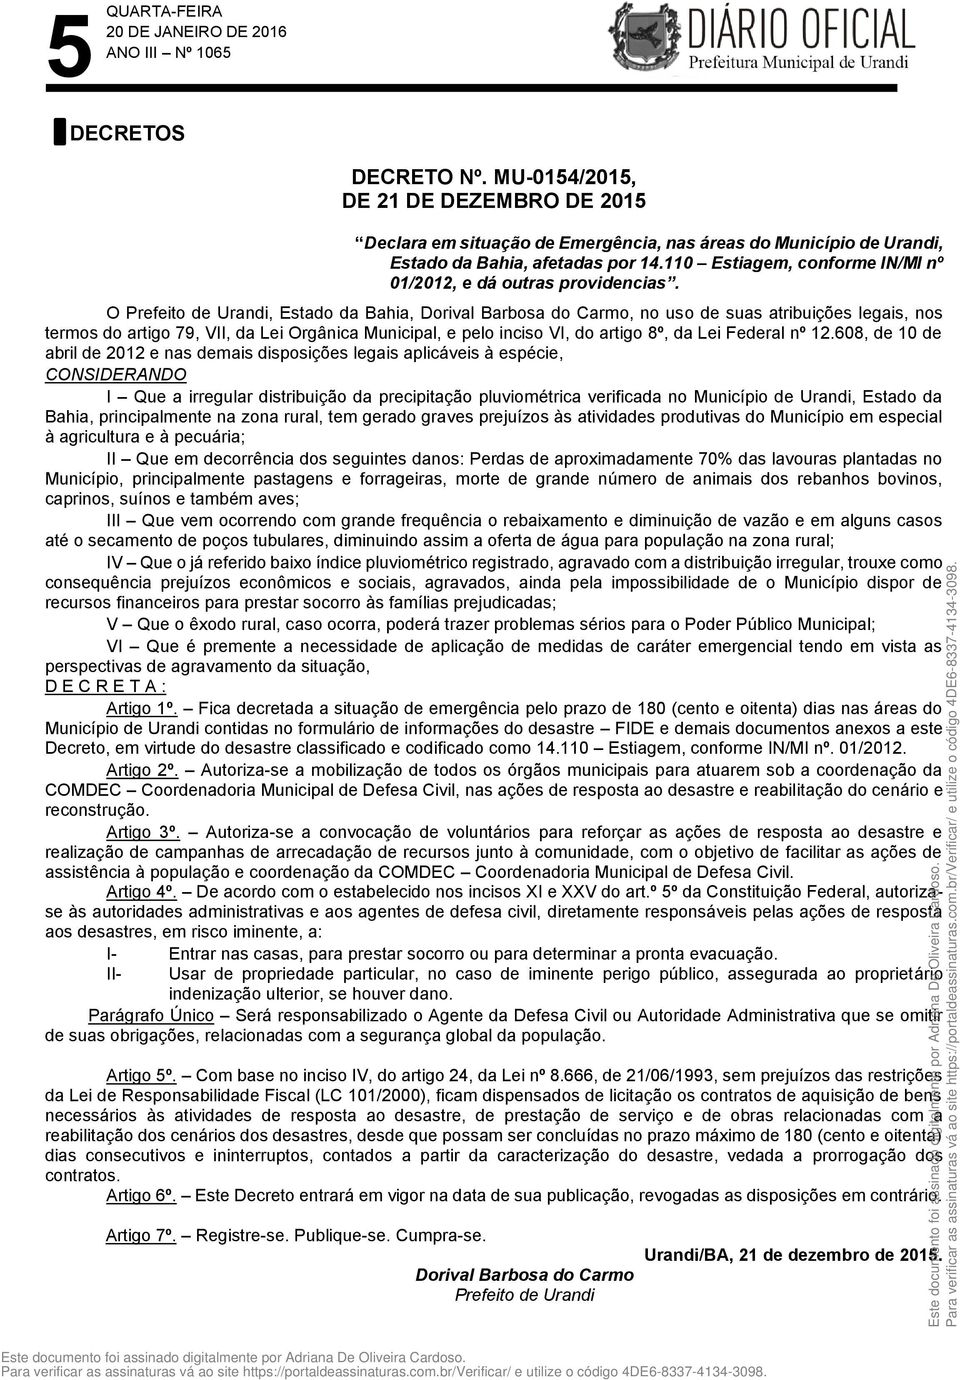 O Prefeito de Urandi, Estado da Bahia,, no uso de suas atribuições legais, nos termos do artigo 79, VII, da Lei Orgânica Municipal, e pelo inciso VI, do artigo 8º, da Lei Federal nº 12.